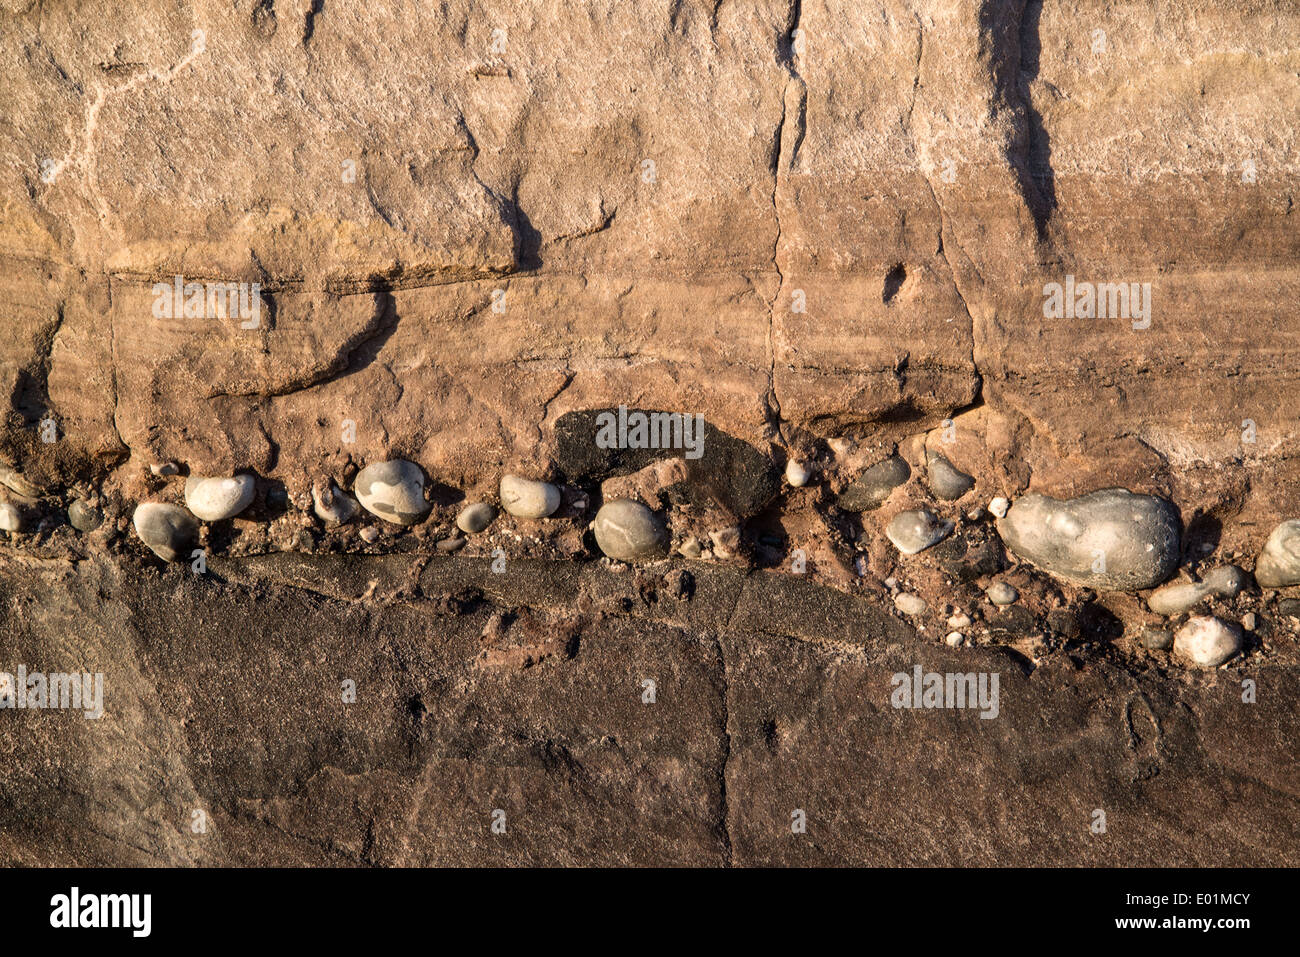 Dettaglio geologico immagine mesozoico rock landscape close up Foto Stock